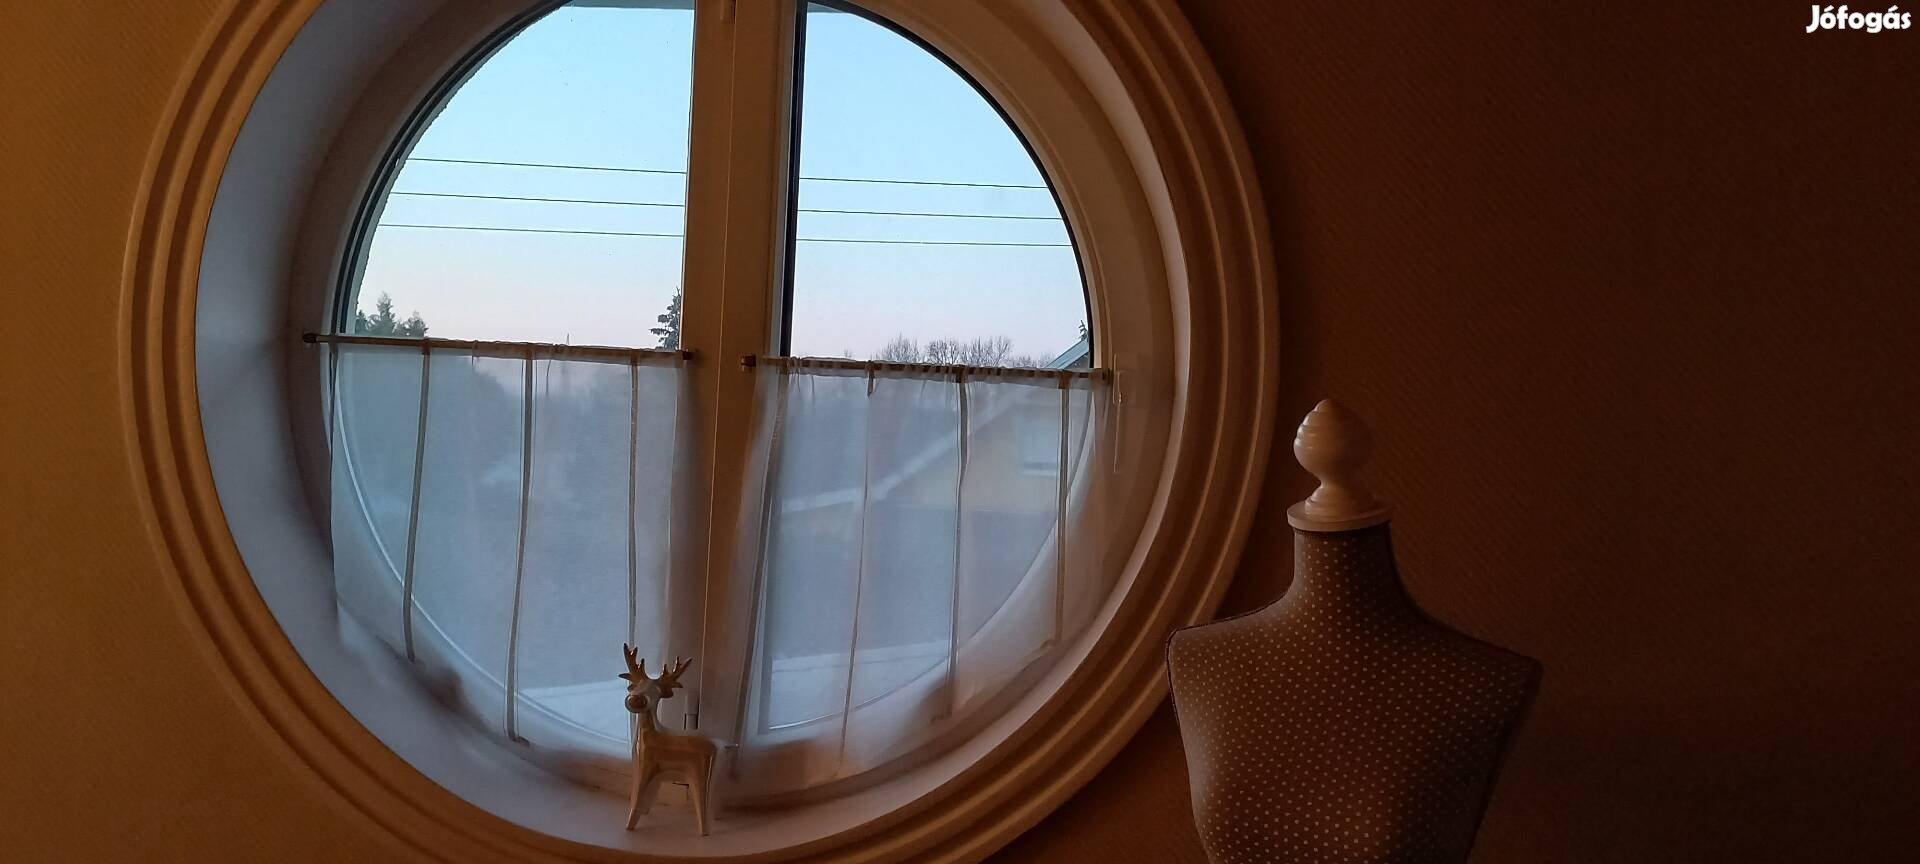 Függöny kerek ablakra 